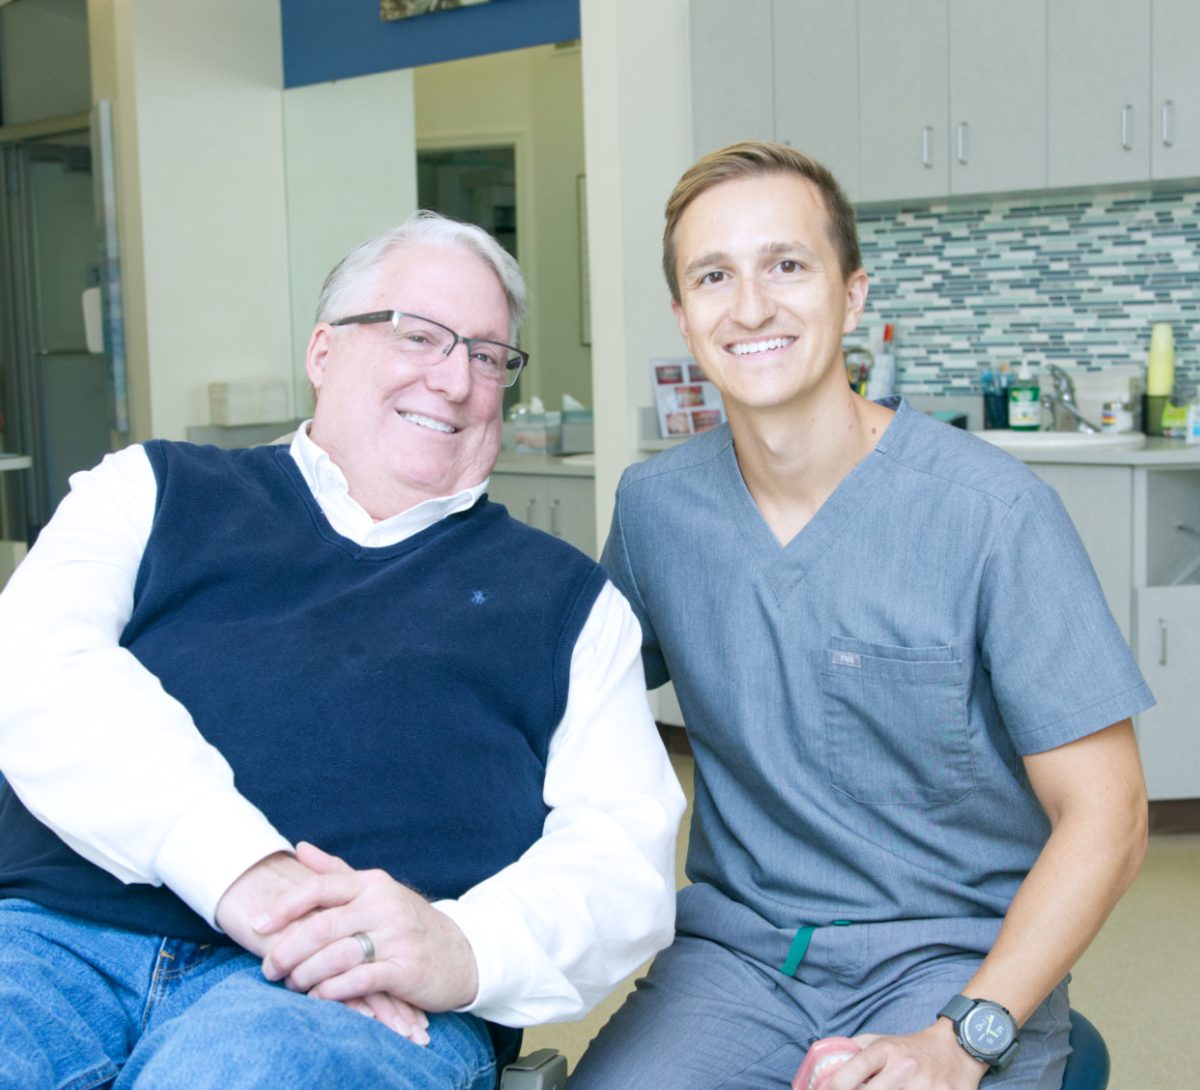 Andrew Pedersen with adult orthodontic patient